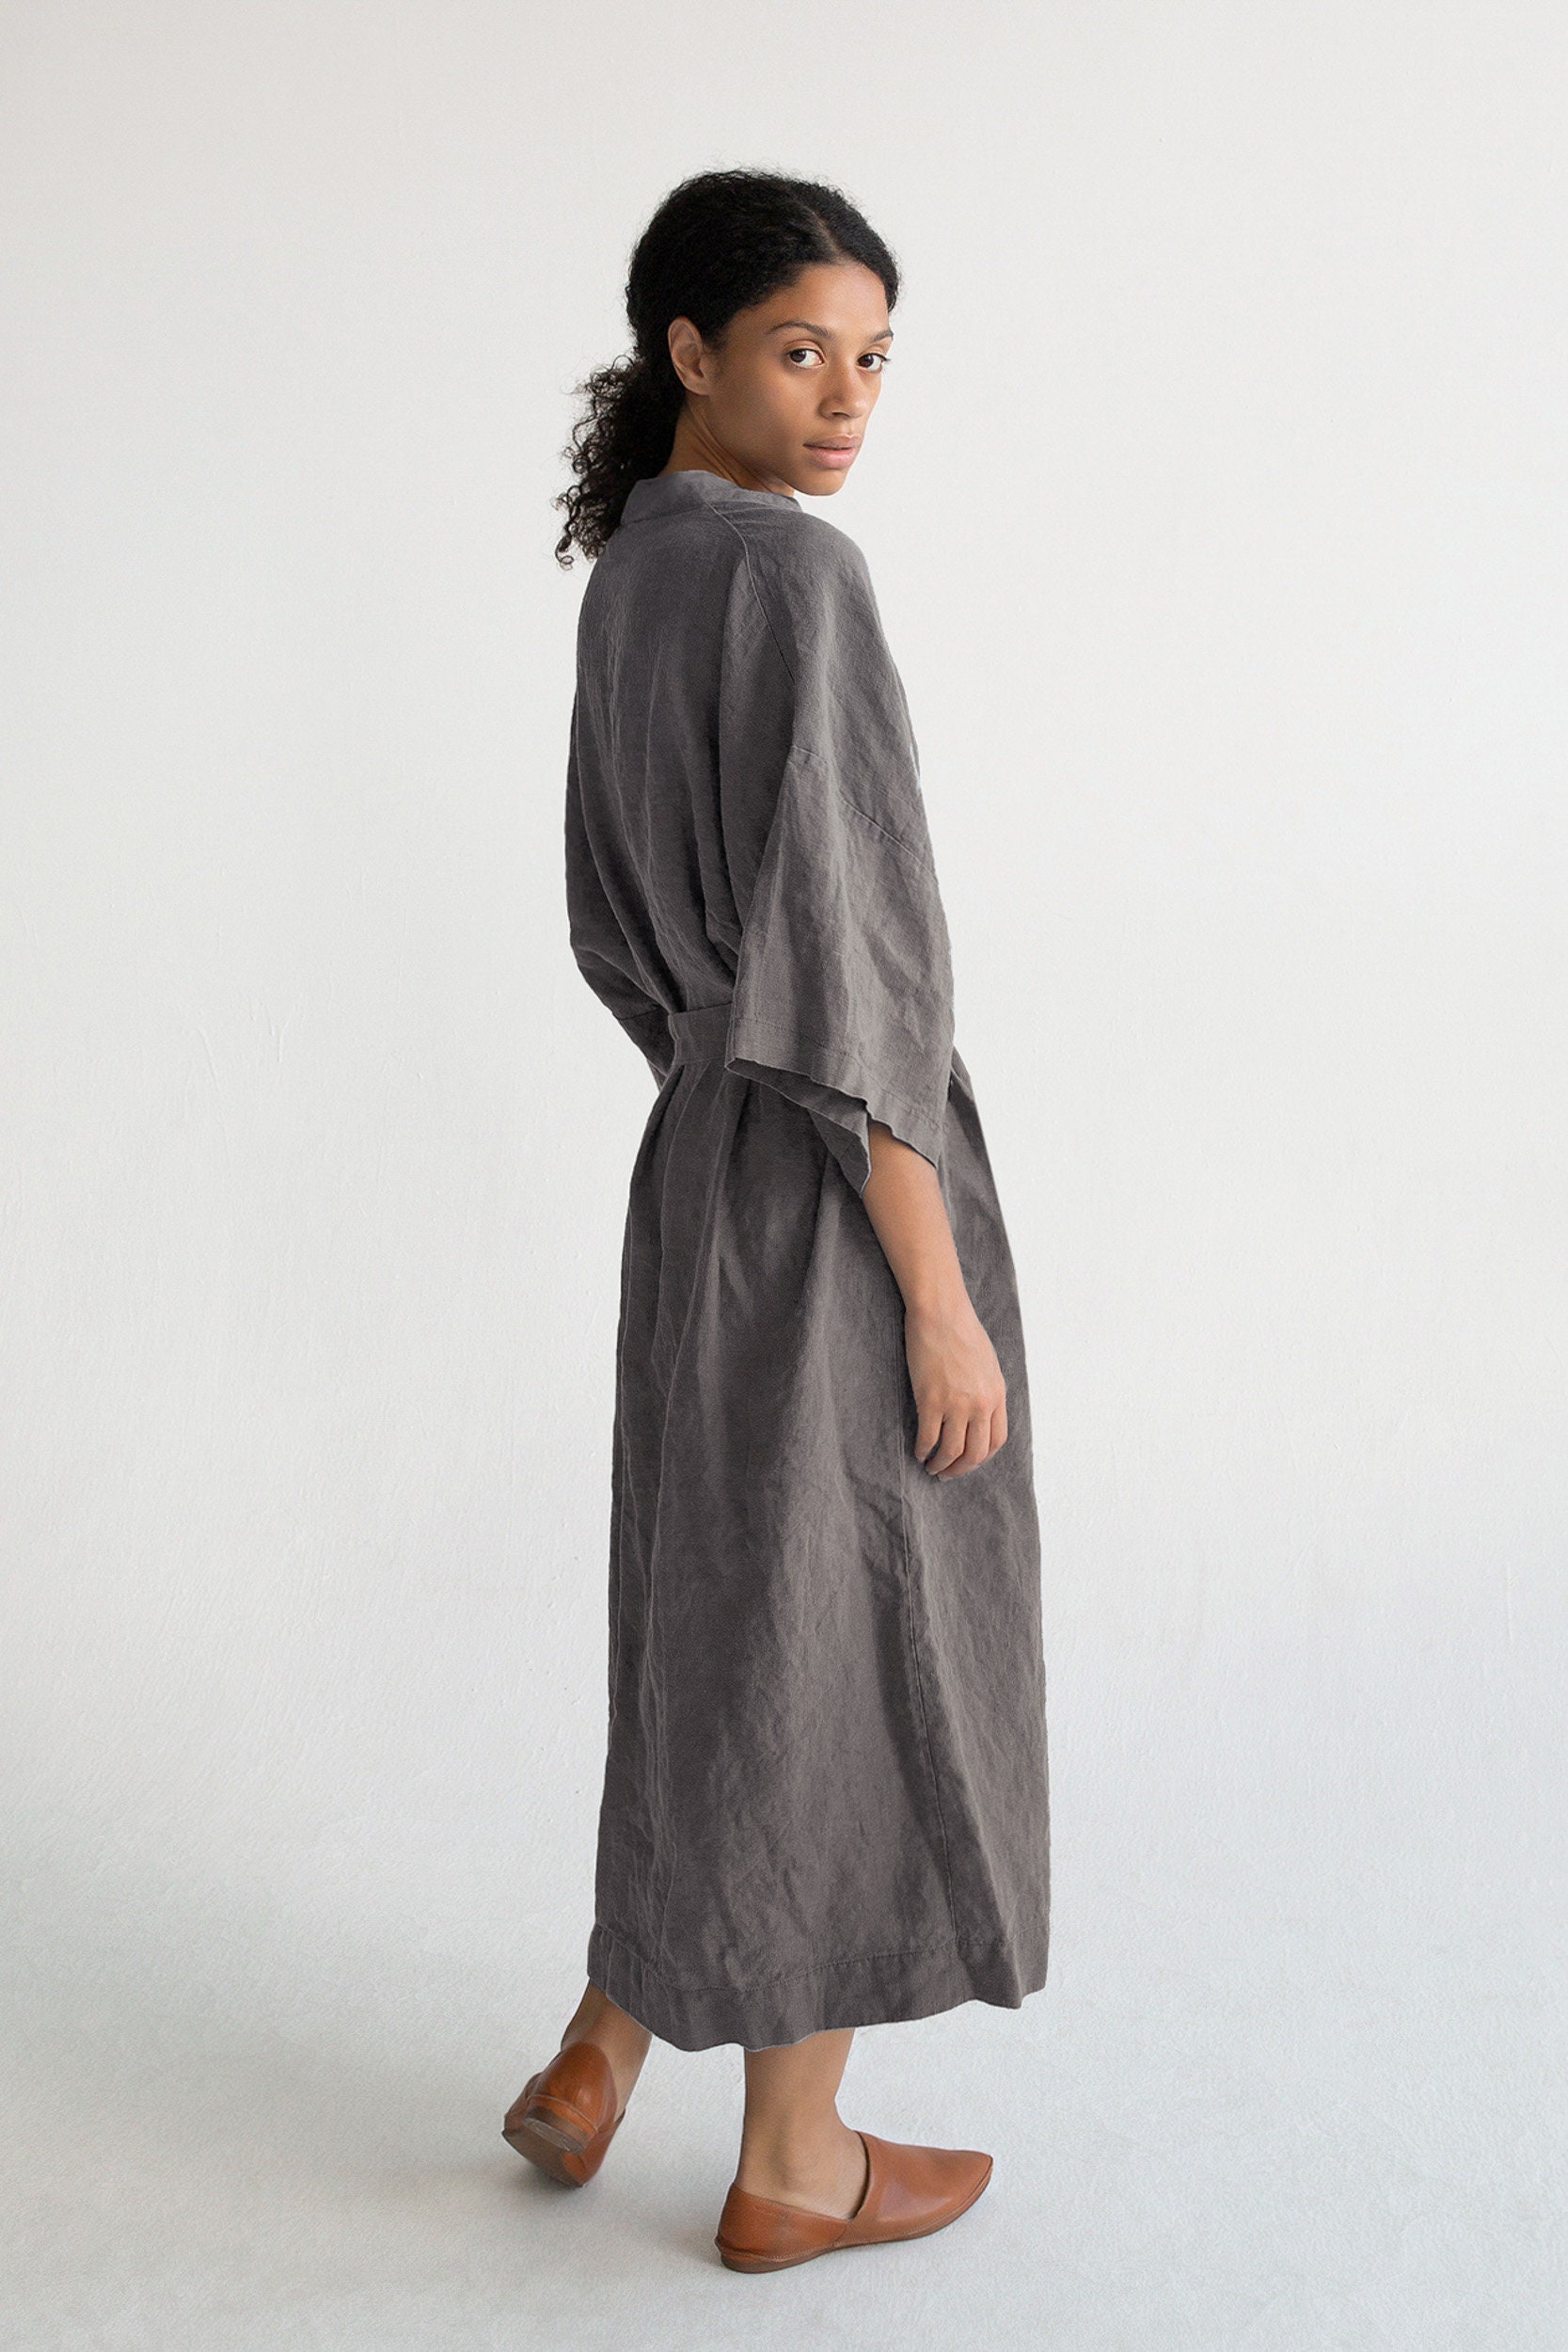 Kimono Robe in Dark Gray / Stonewashed Linen Kimono / Linen - Etsy